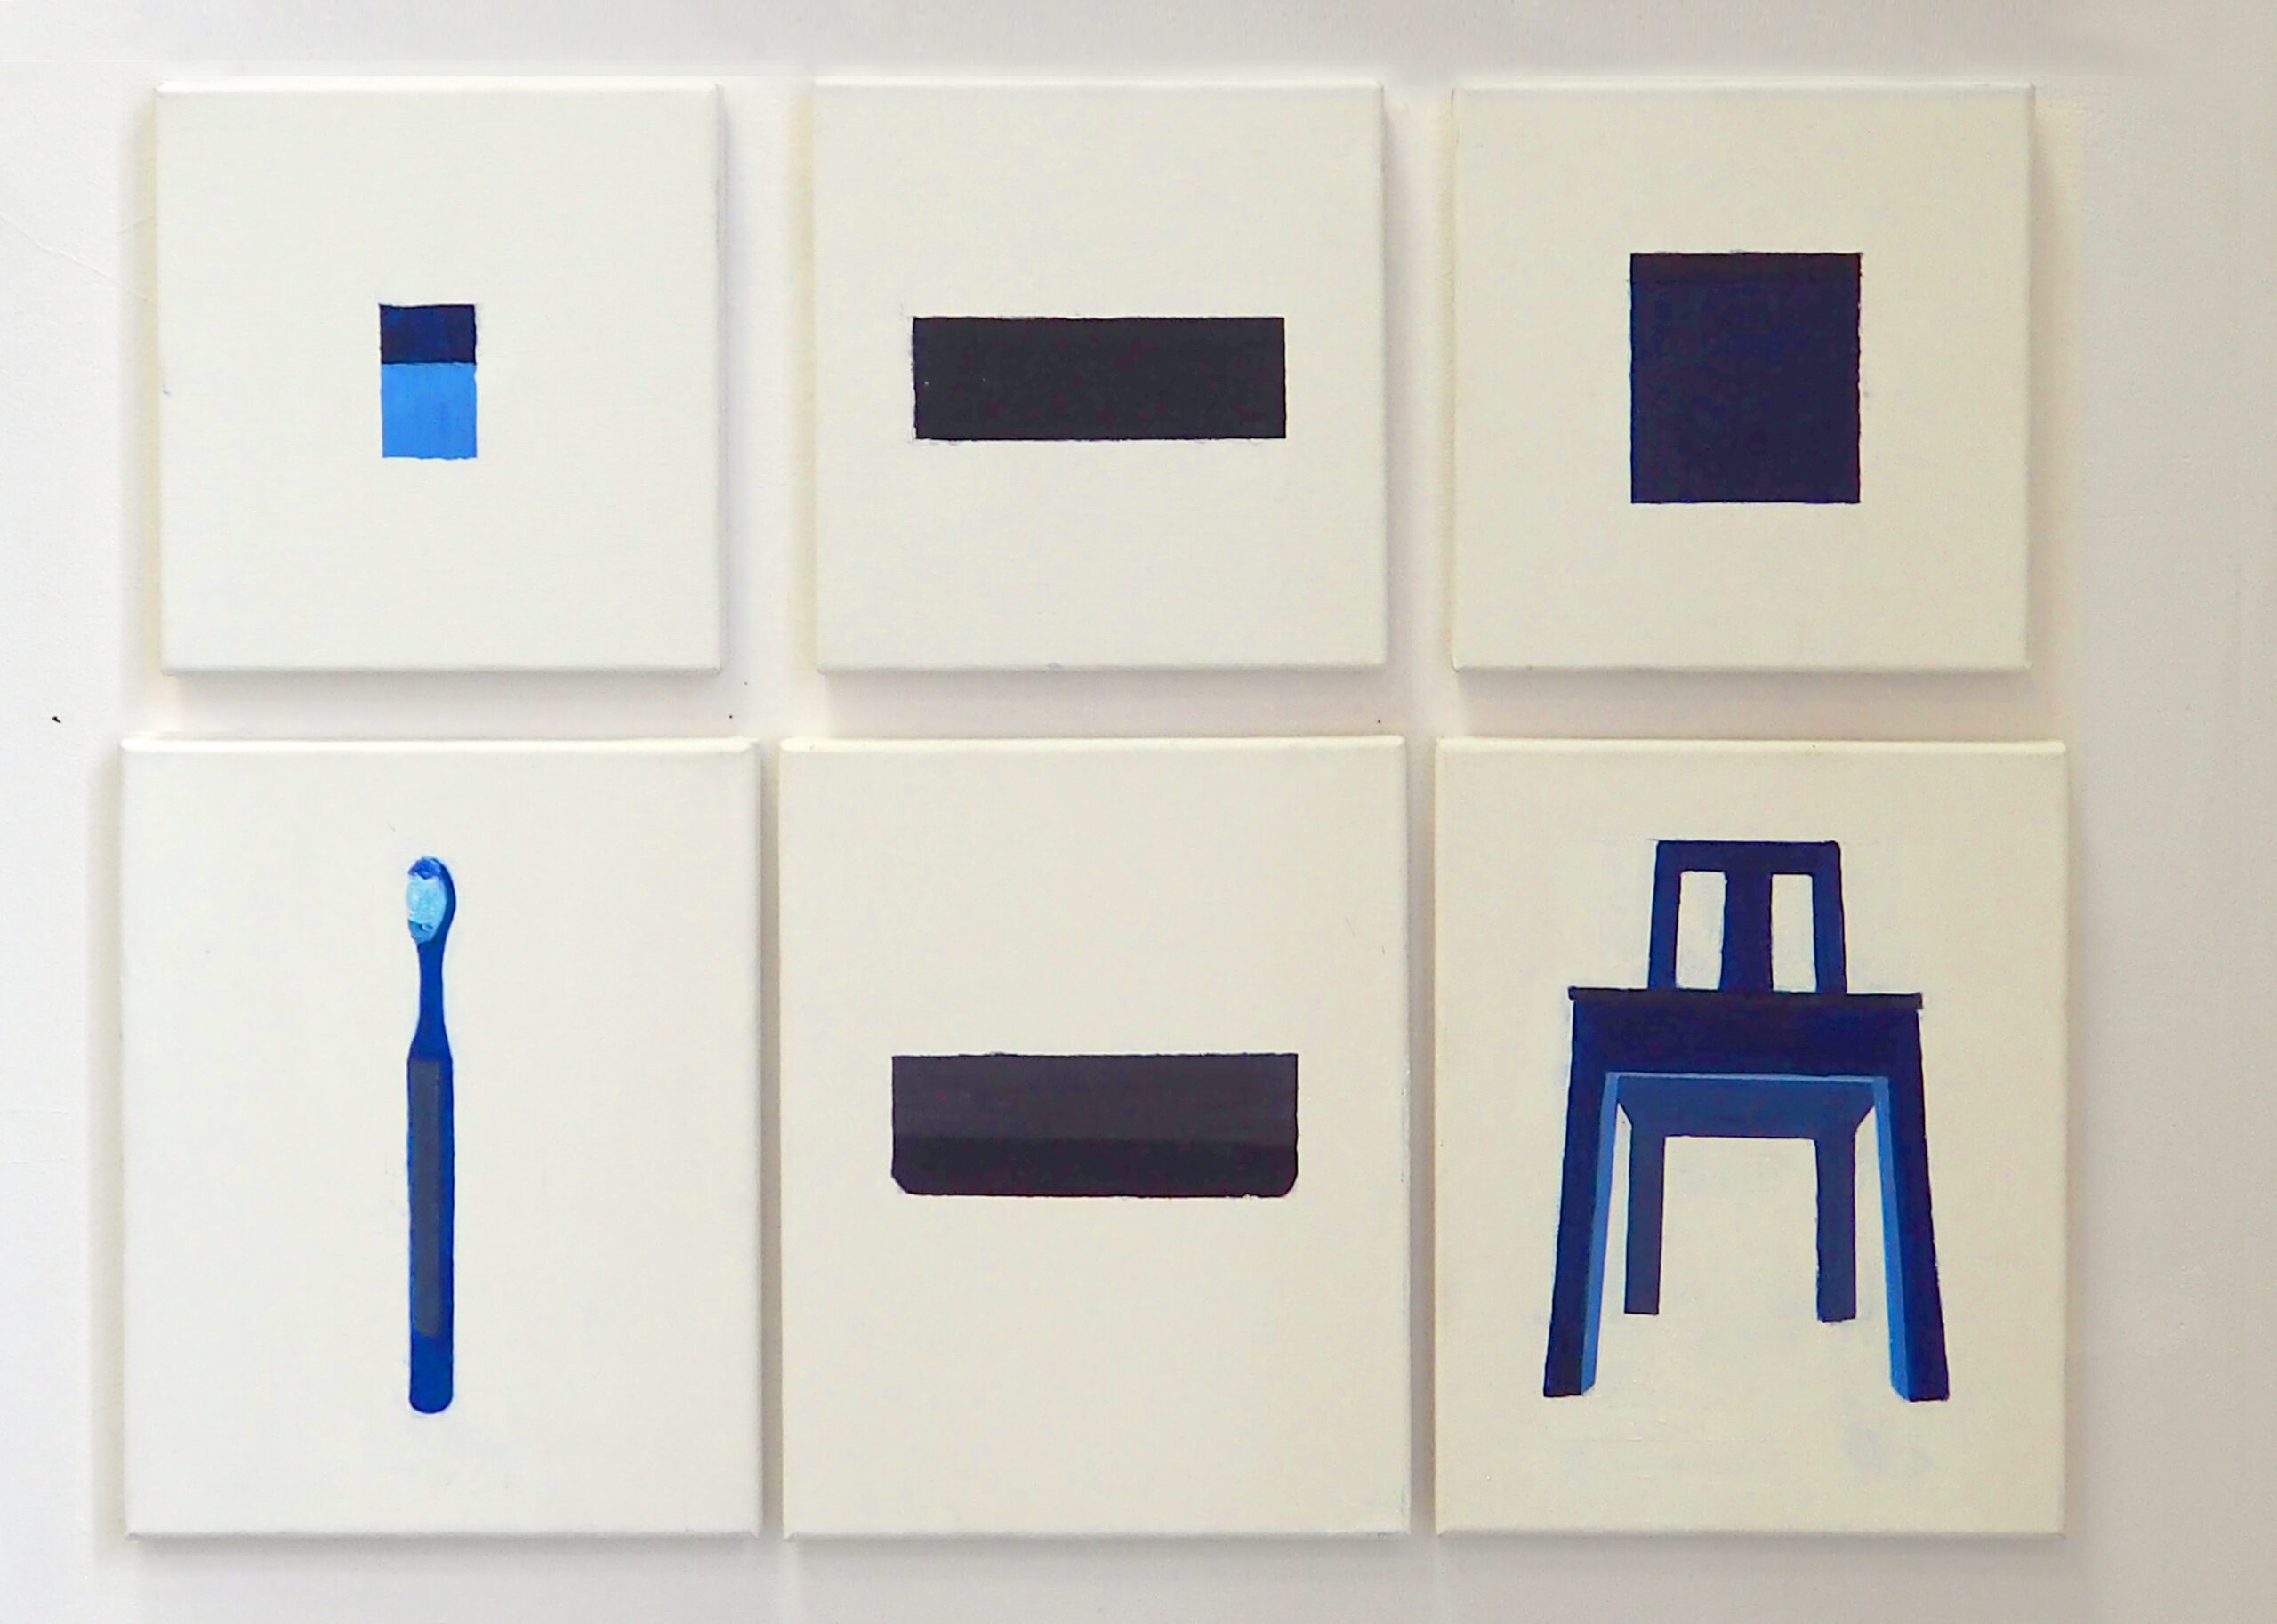  Obraz z sześciu elementów, przedstawia szczoteczkę do zębów, książkę i krzesło; wszystkie przedmioty namalowane w kolorze niebieskim.